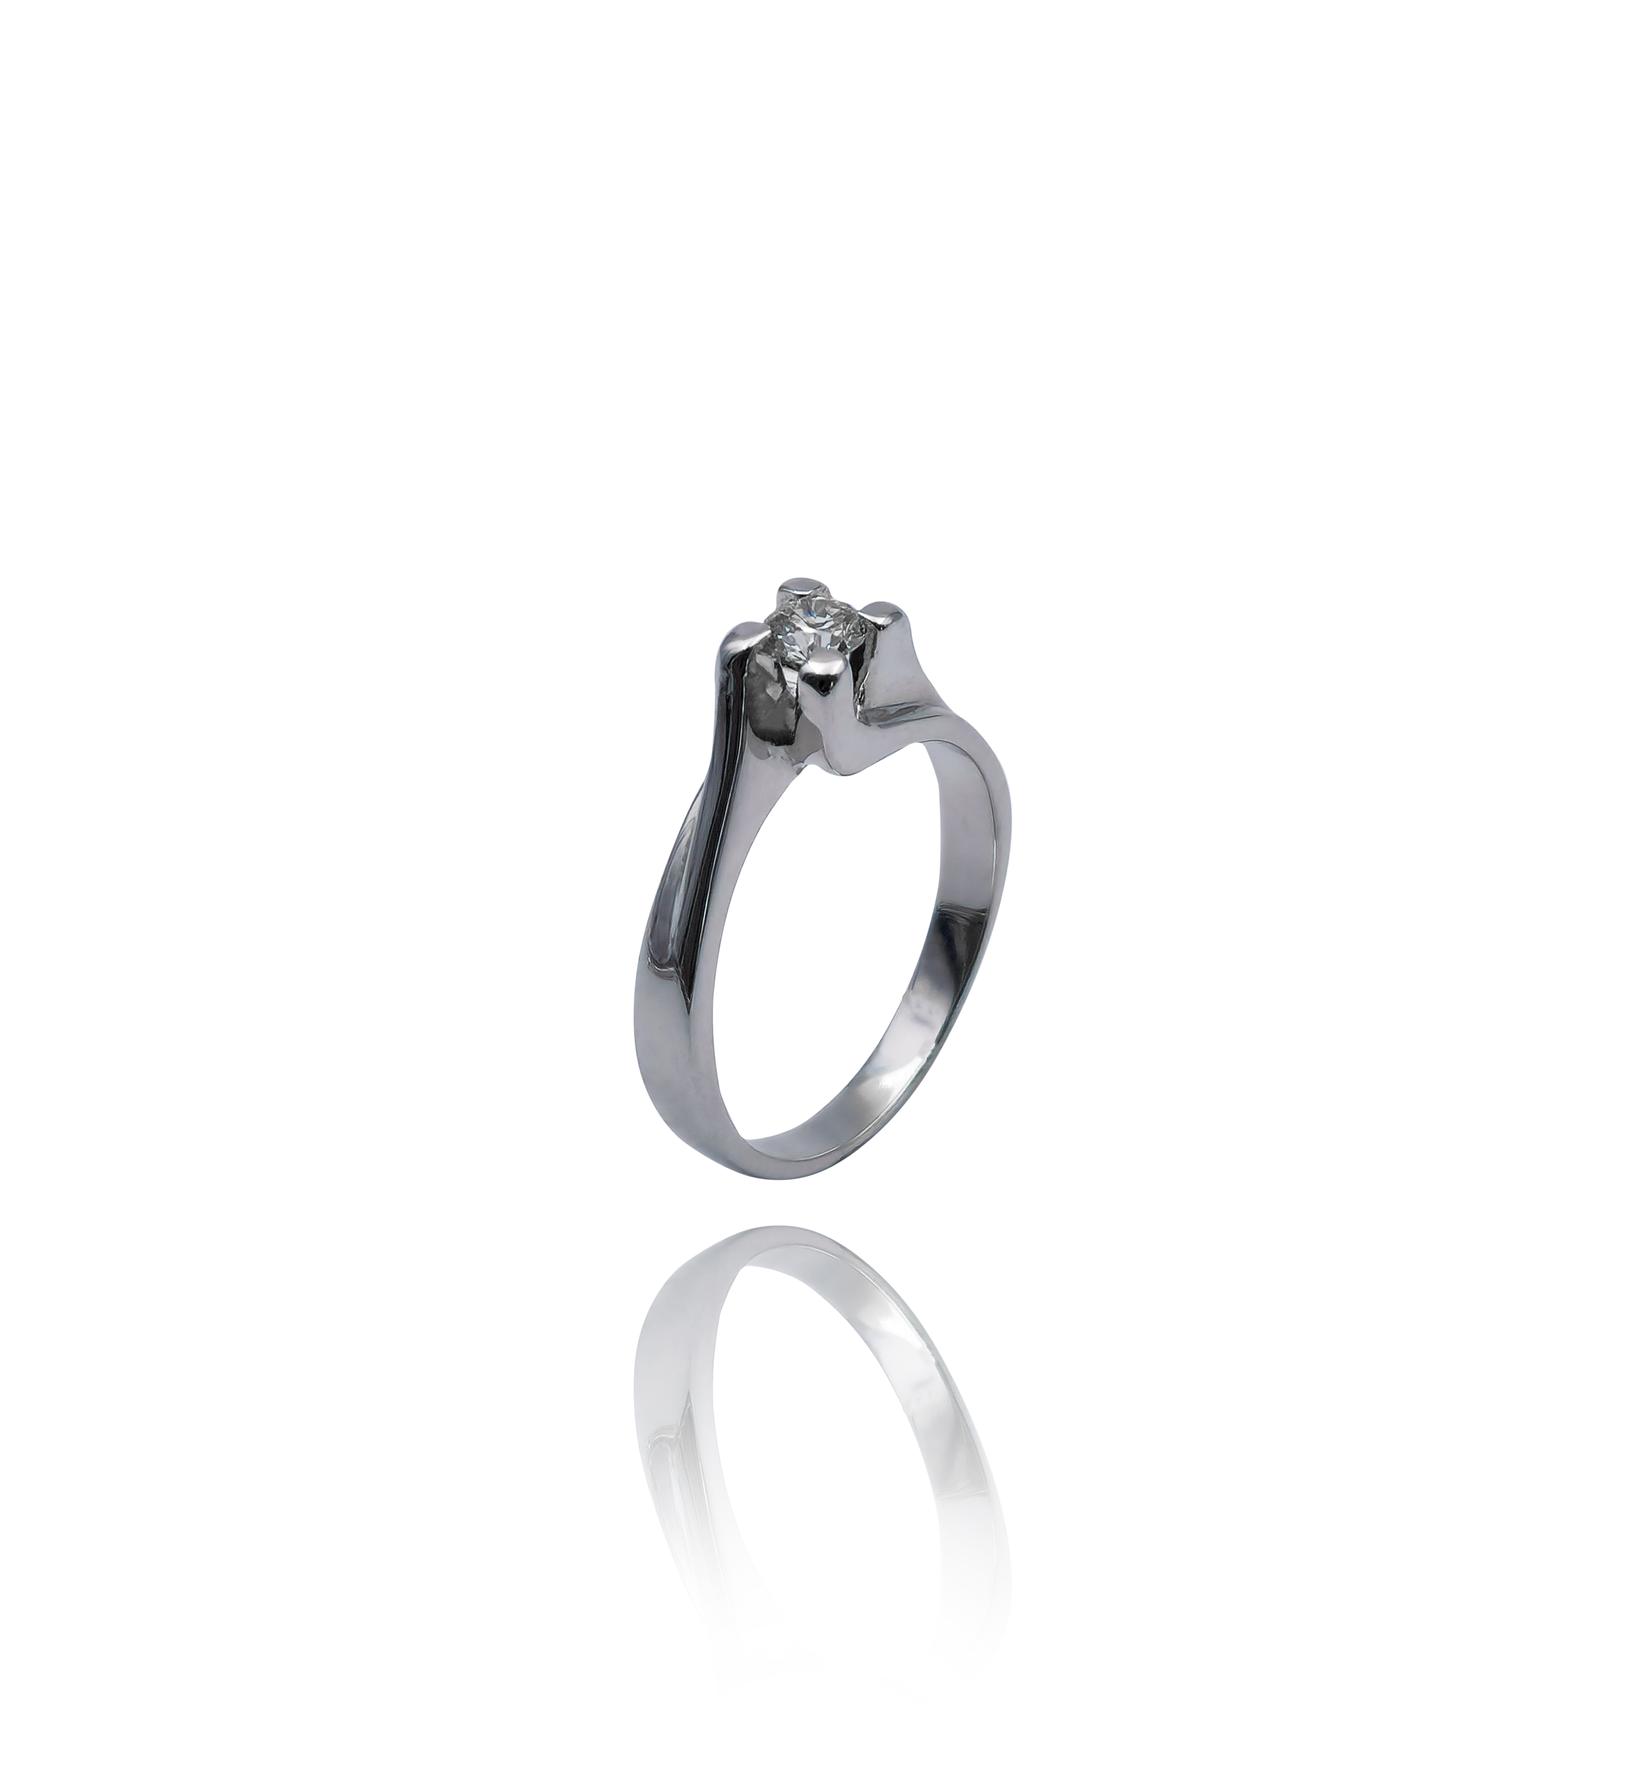 Selected image for Ženski prsten od Belog zlata sa Brilijantom, 585, 14mm